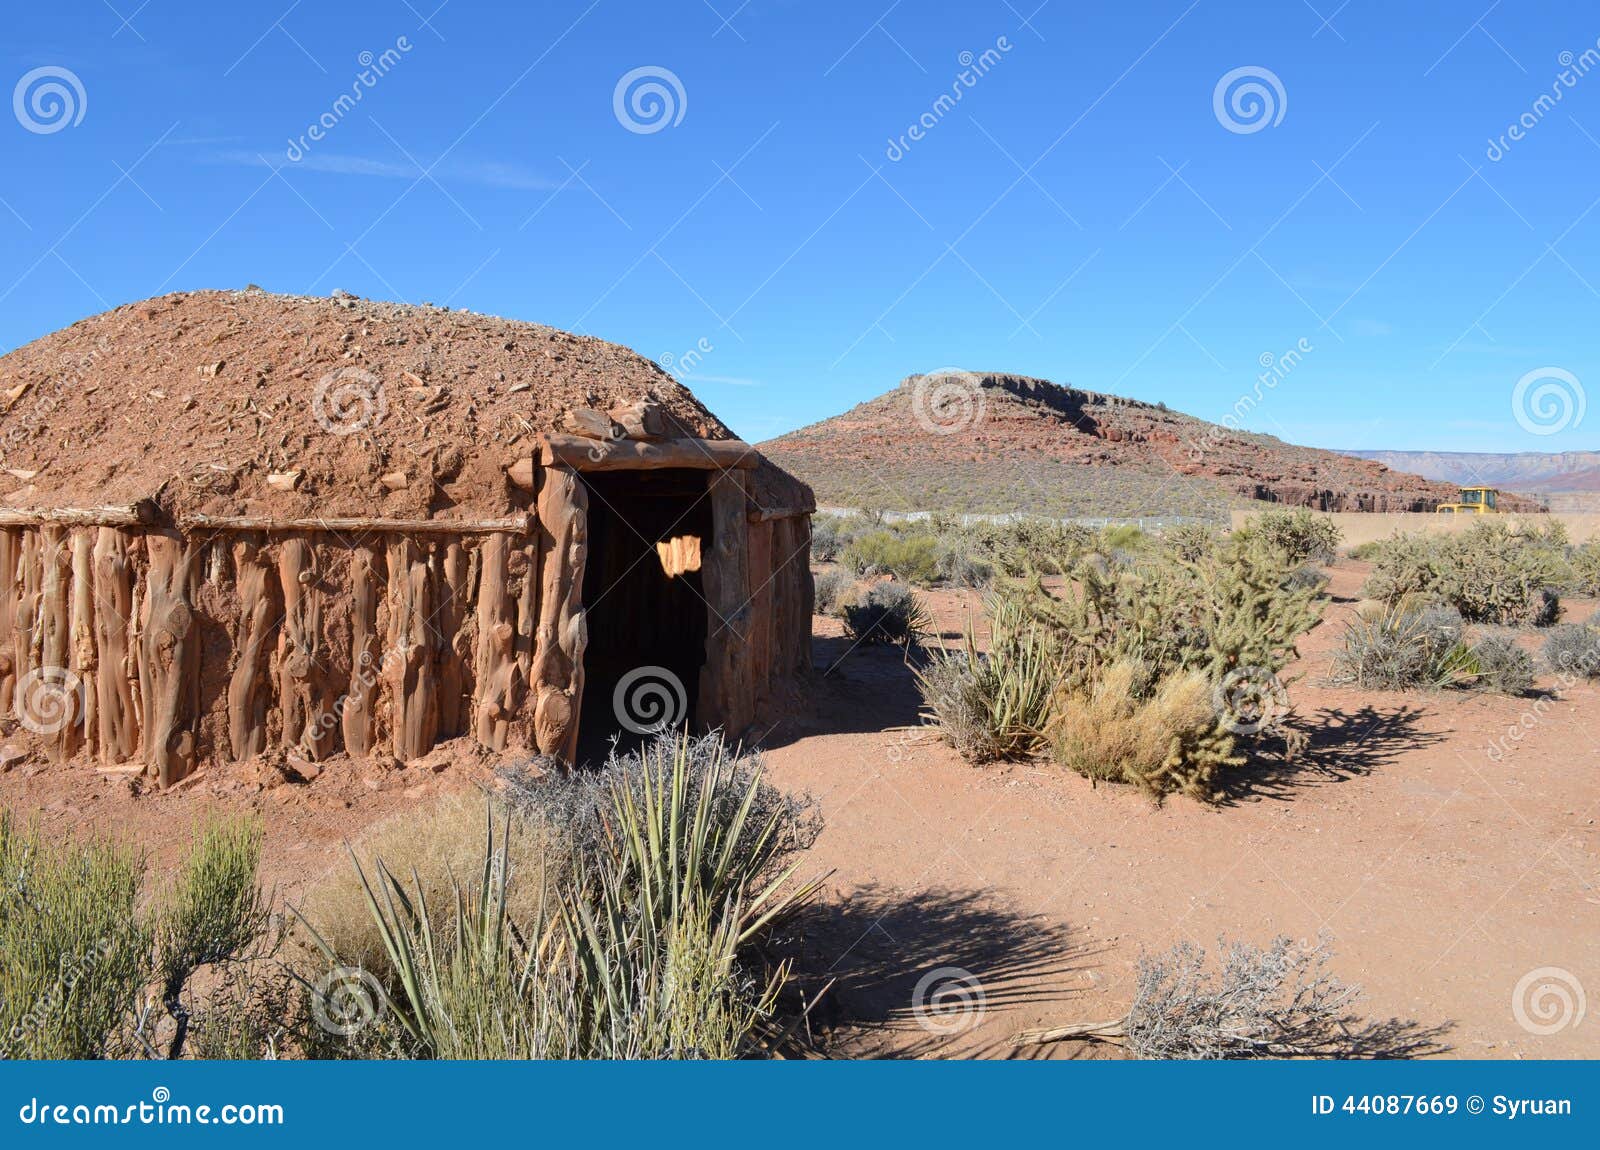 desert hut in mohave desert grand canyon